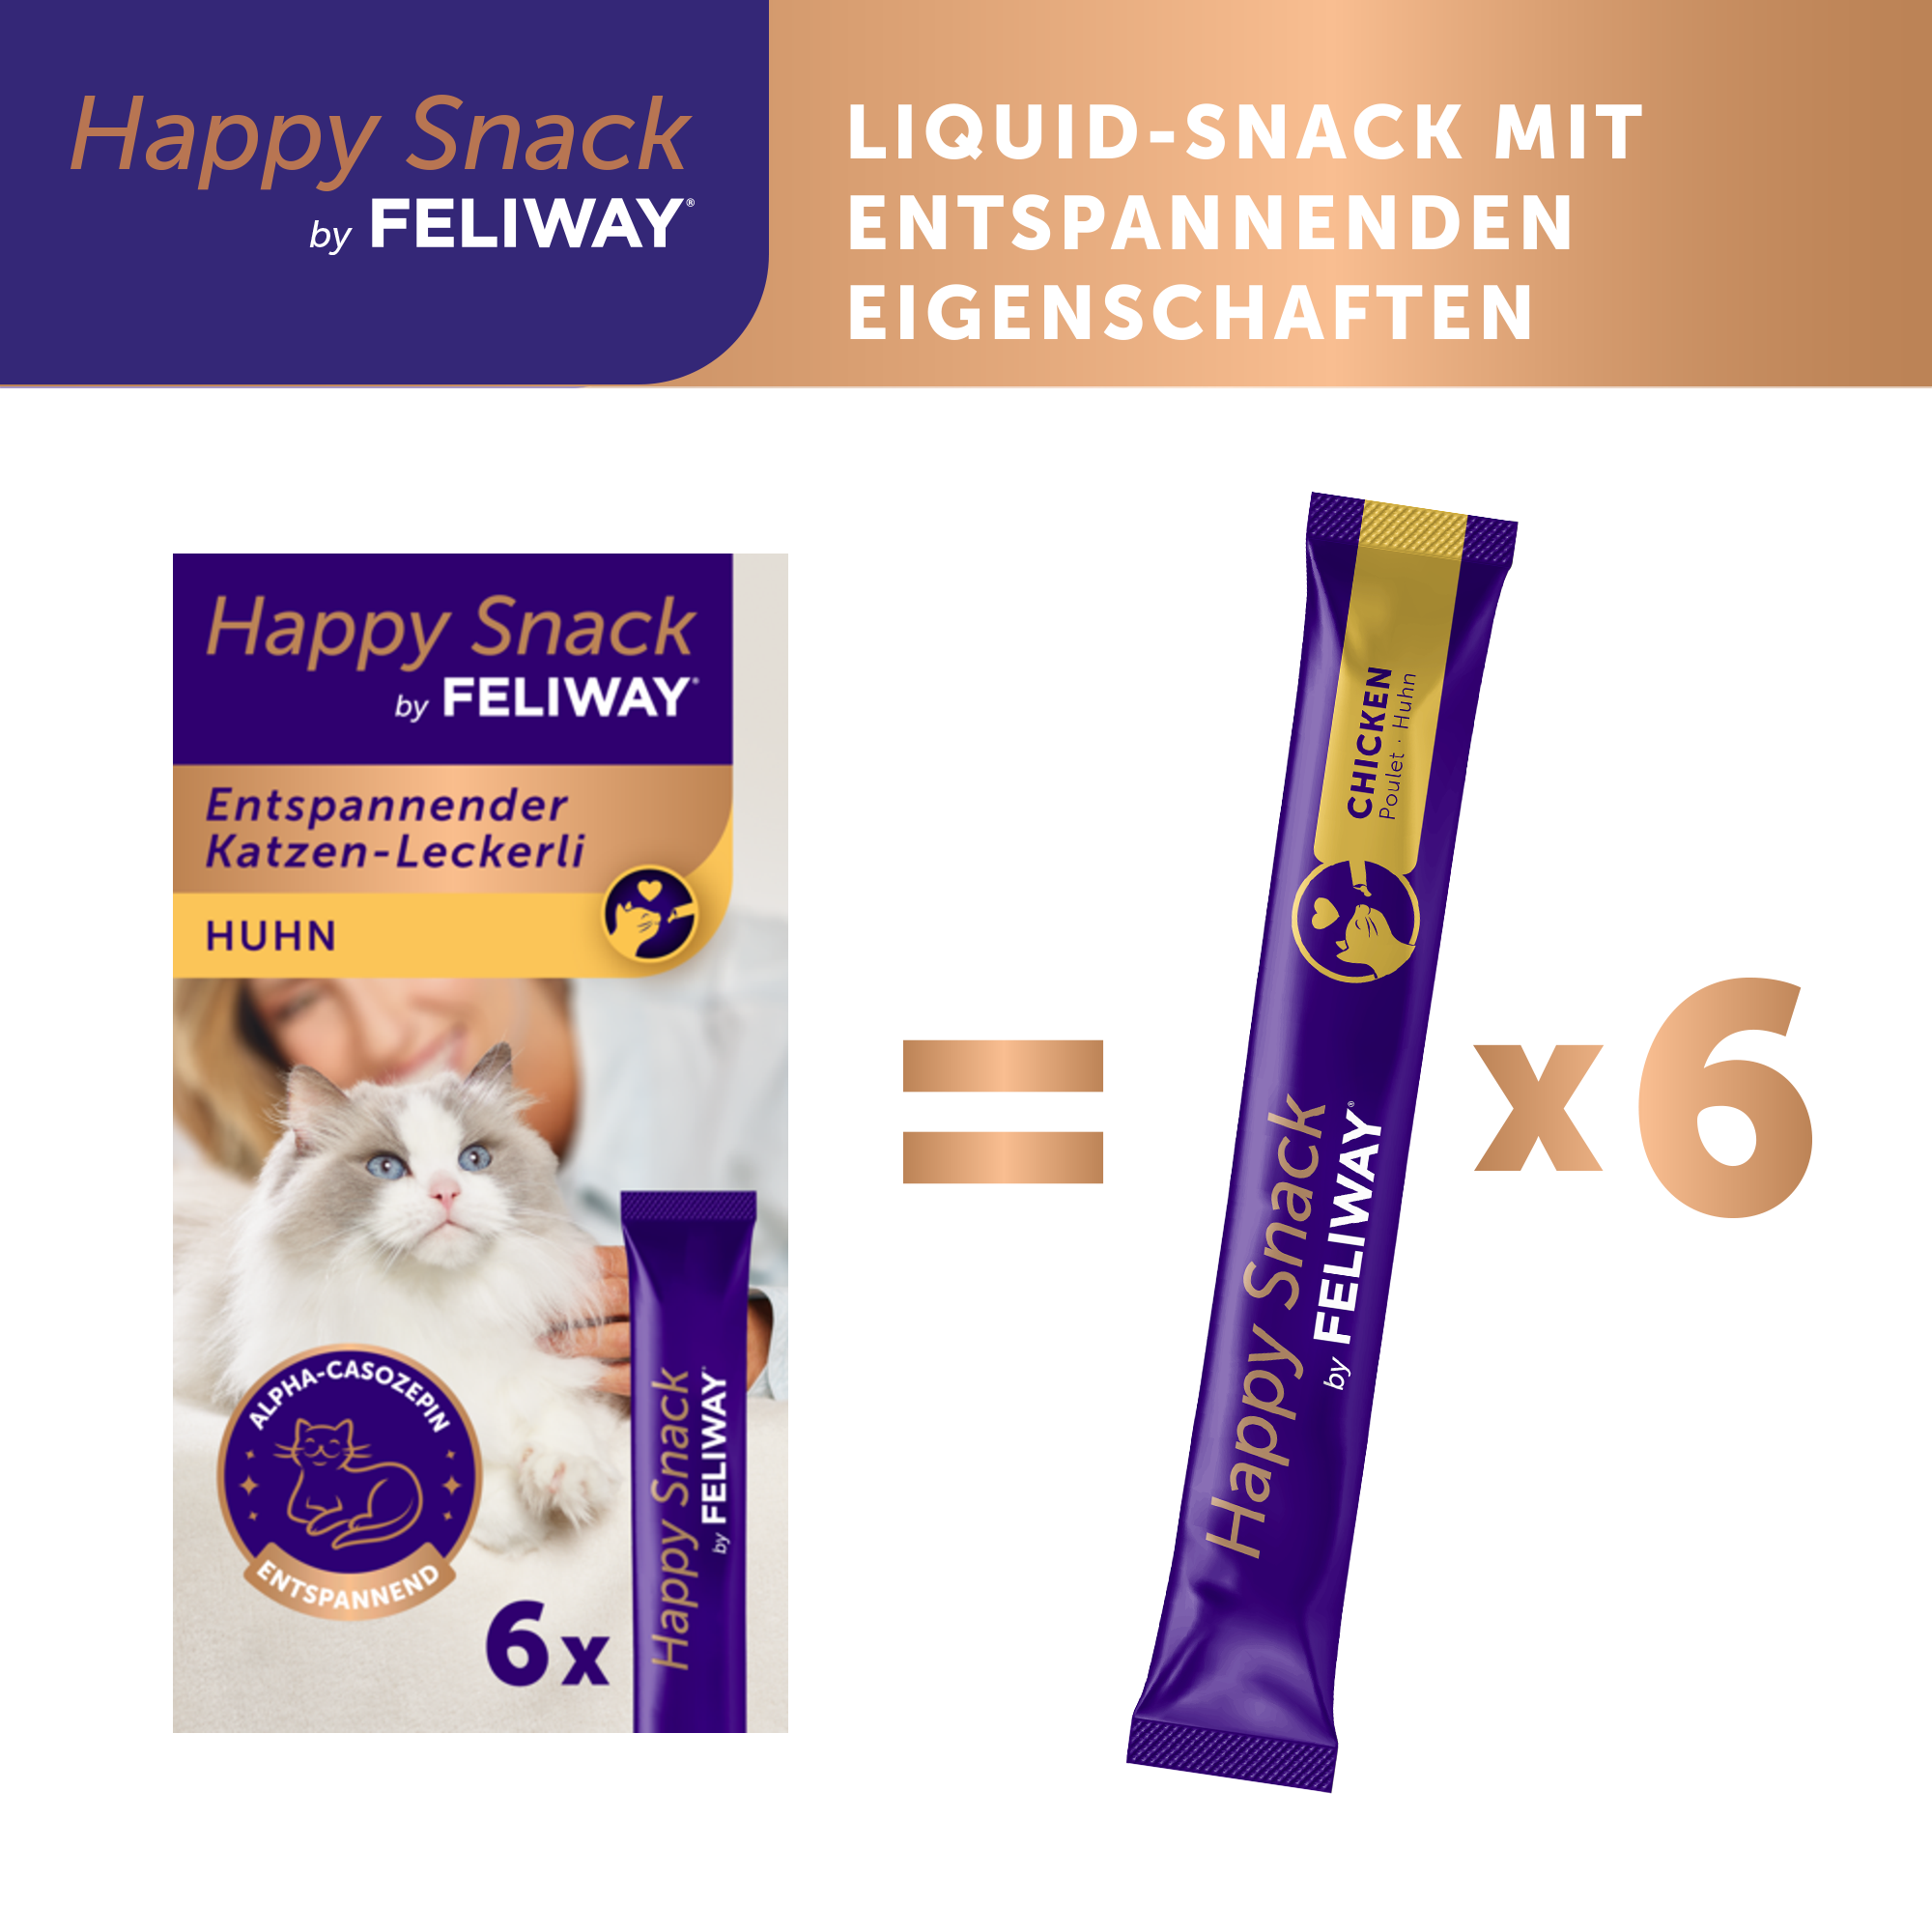 Happy snack liquid-snack